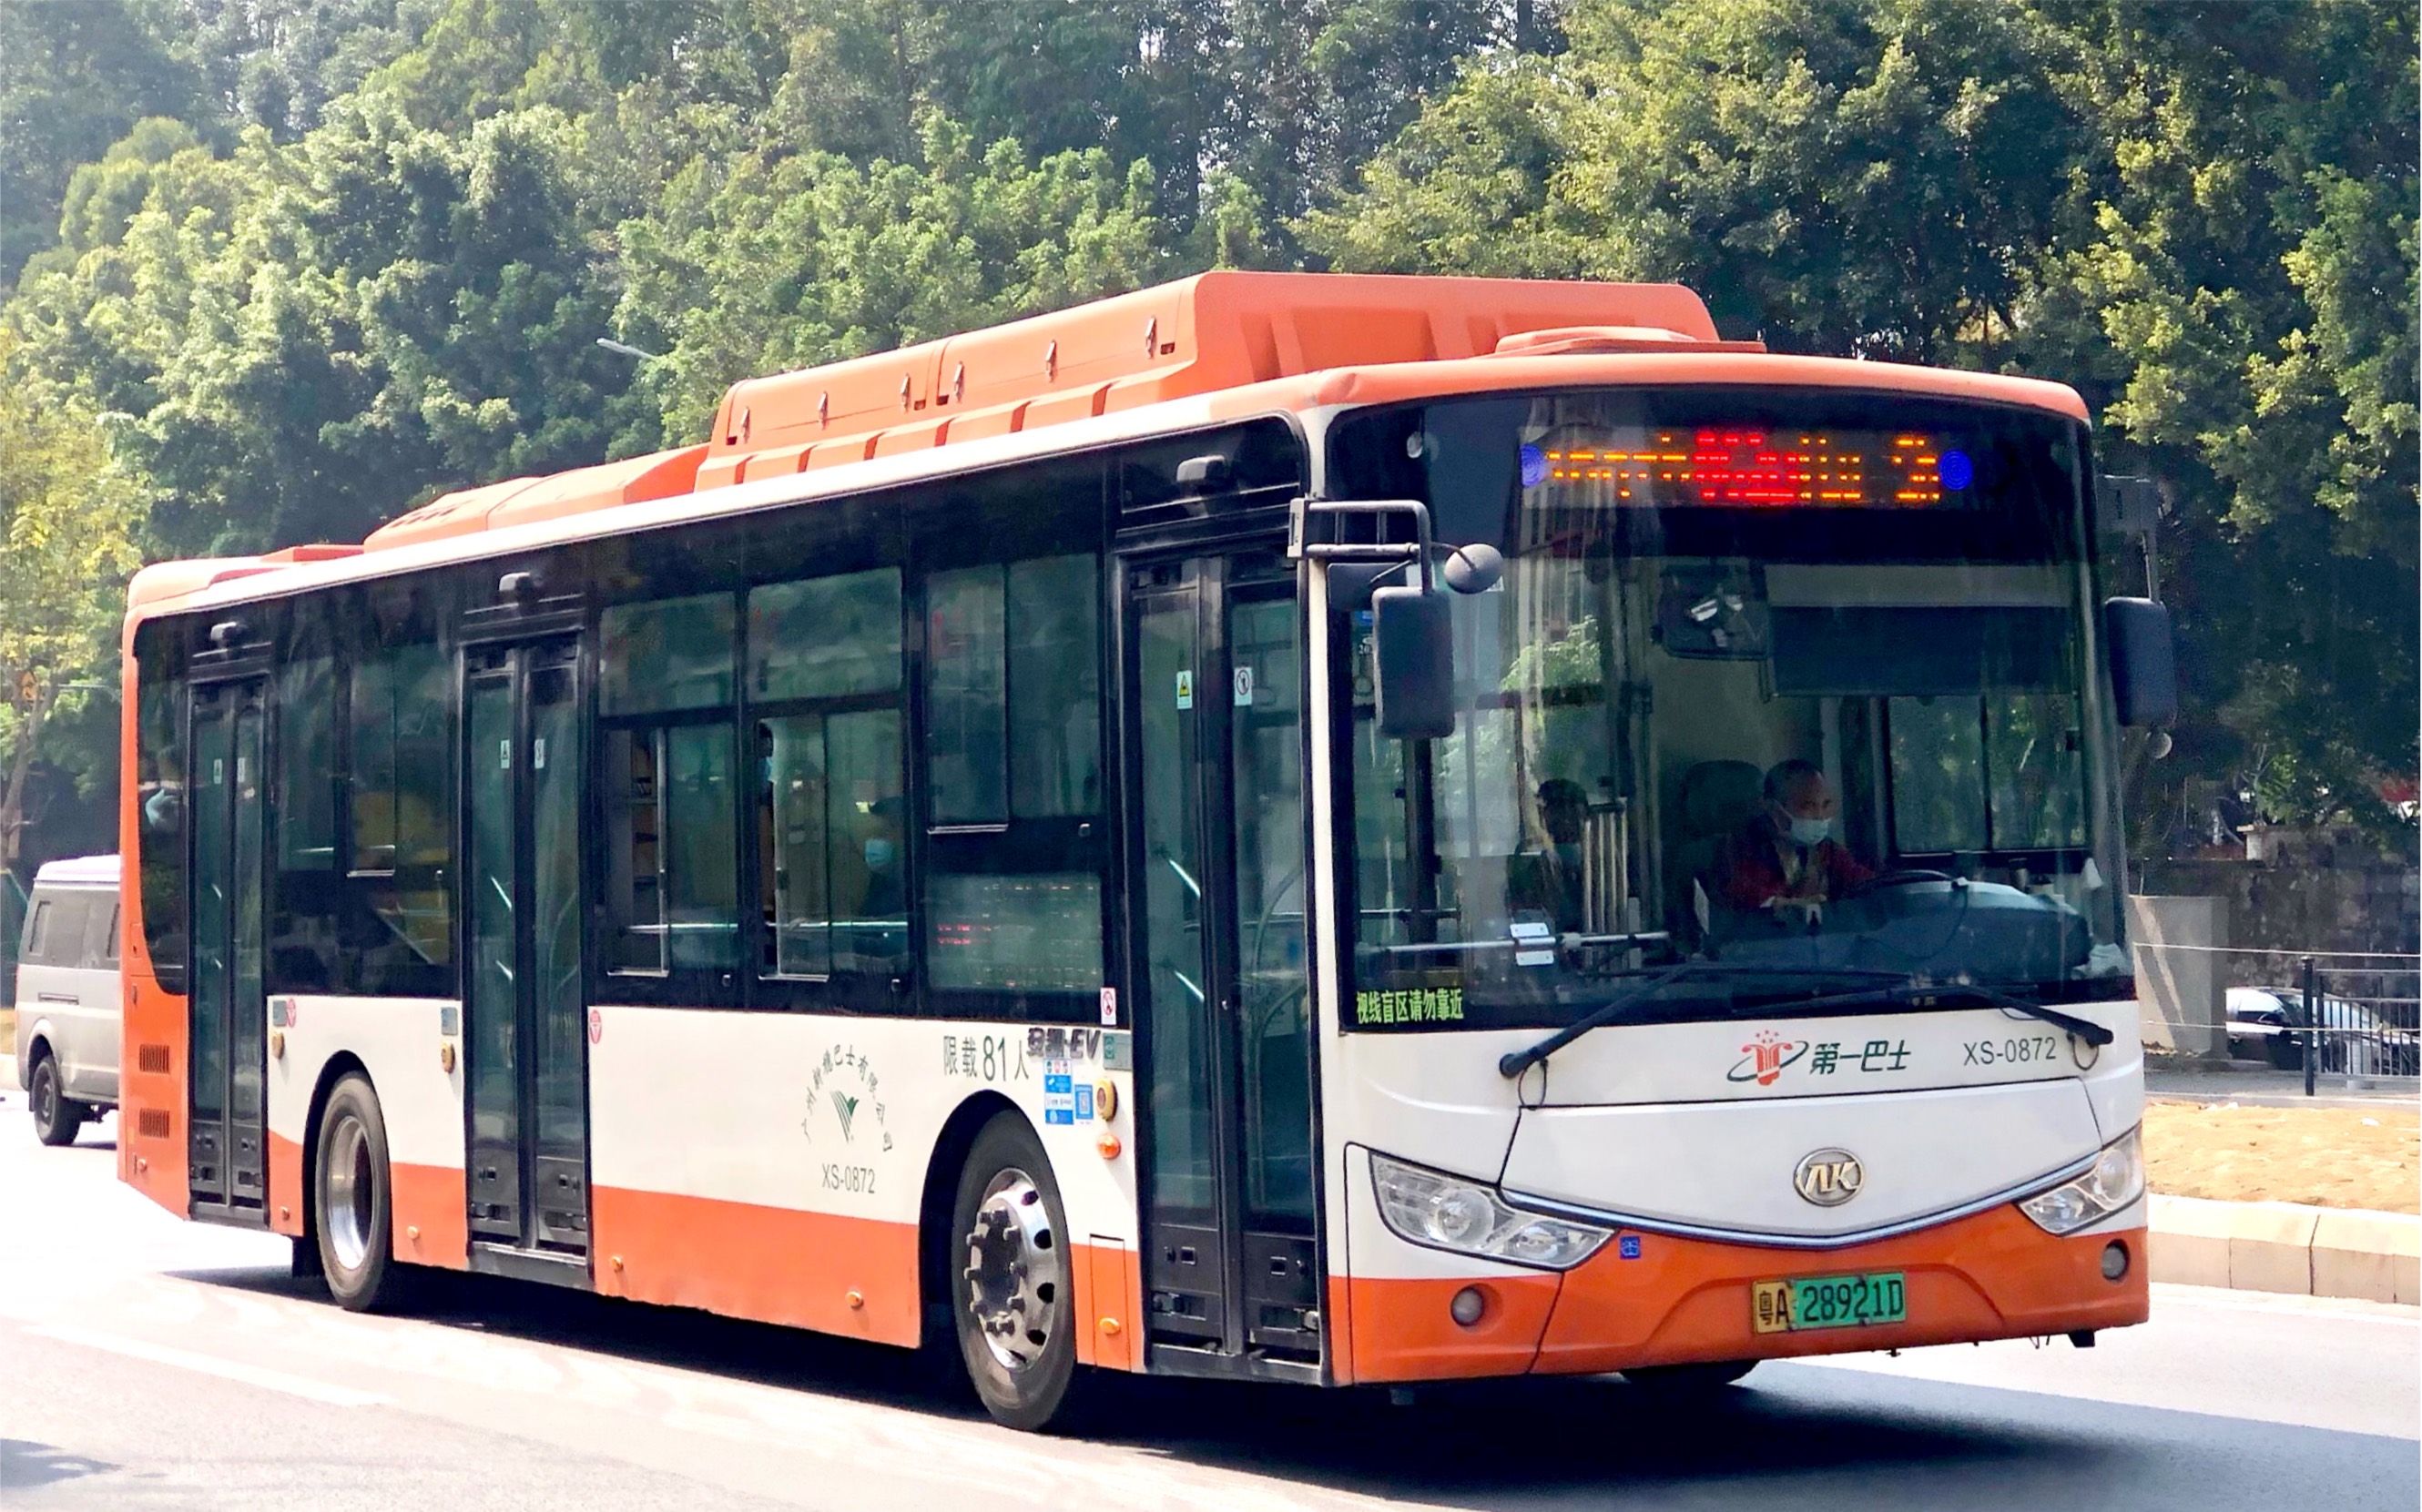 【新穗·pov】 广州新穗巴士公司862b线(沙太路北总站→广州火车站